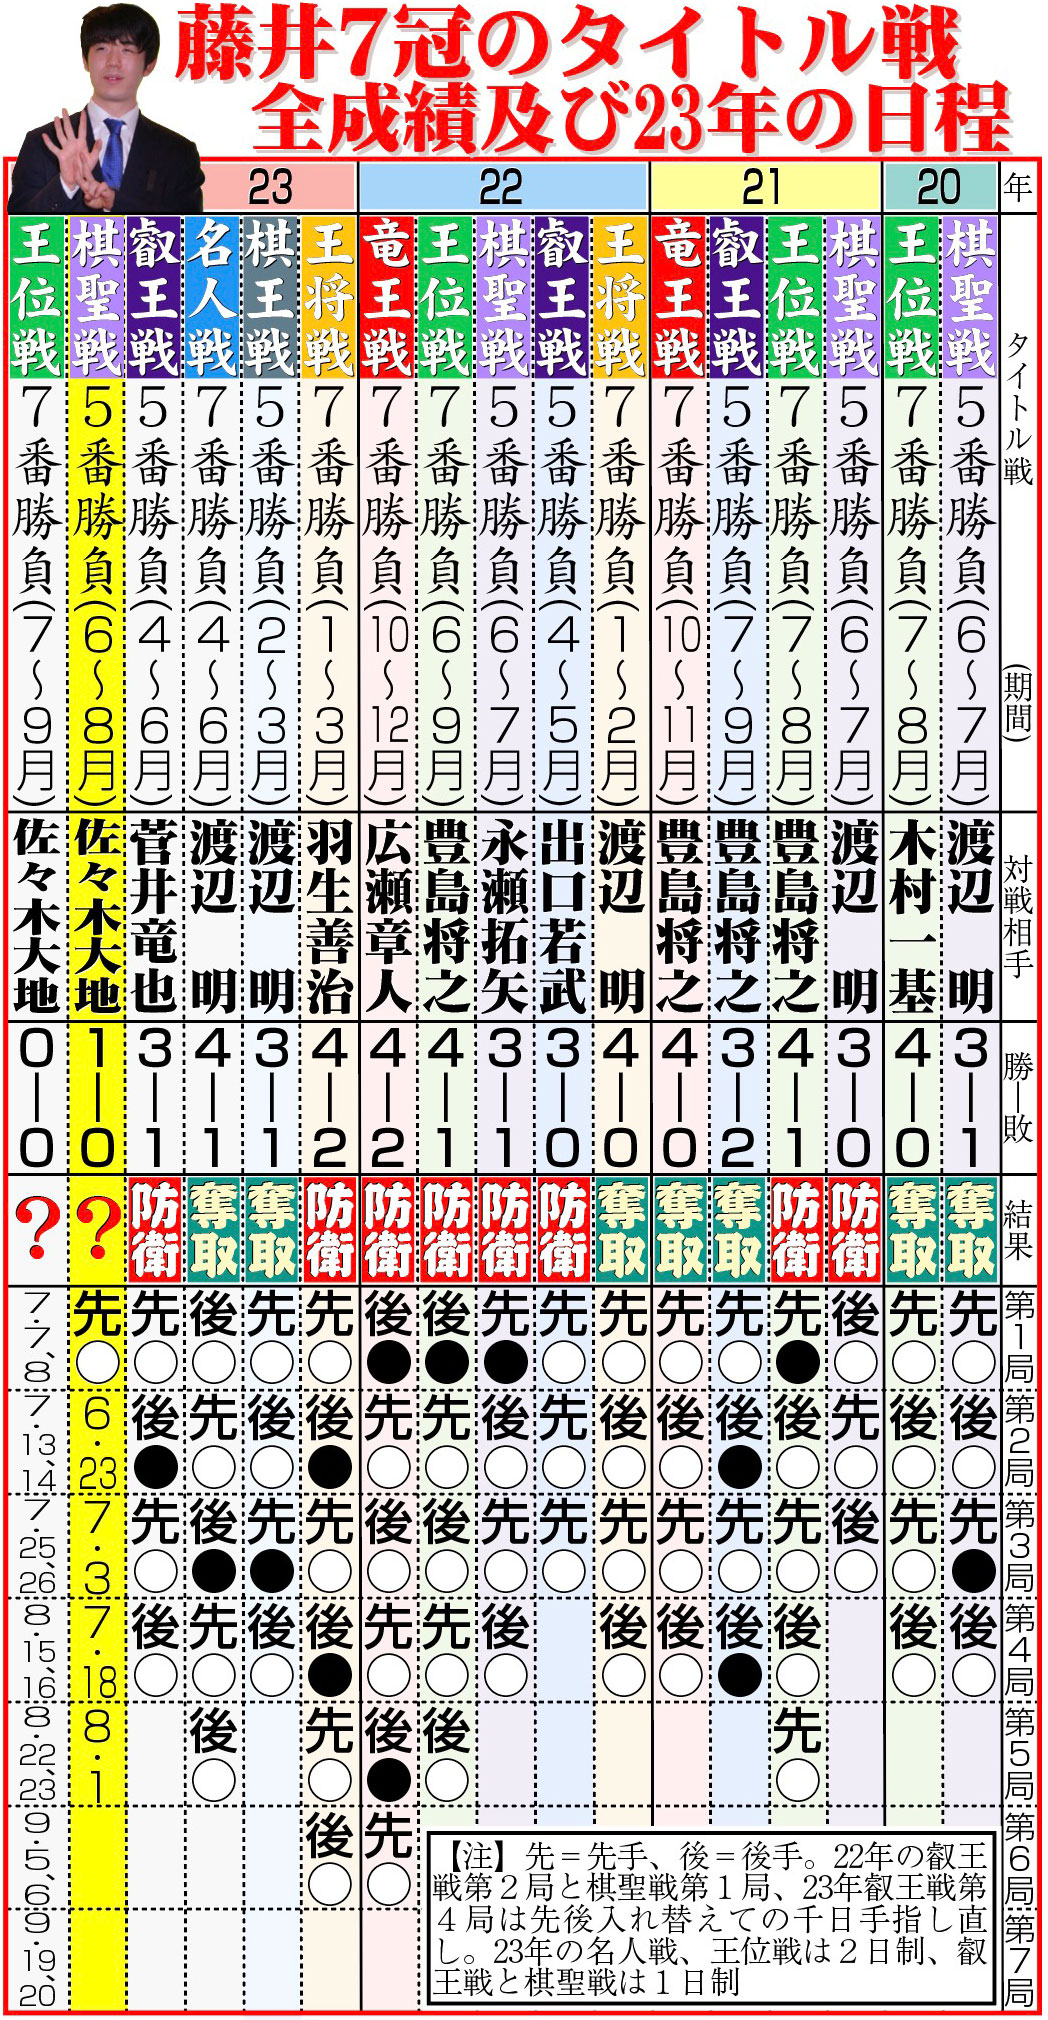 【イラスト】藤井7冠のタイトル戦全成績及び23年の日程